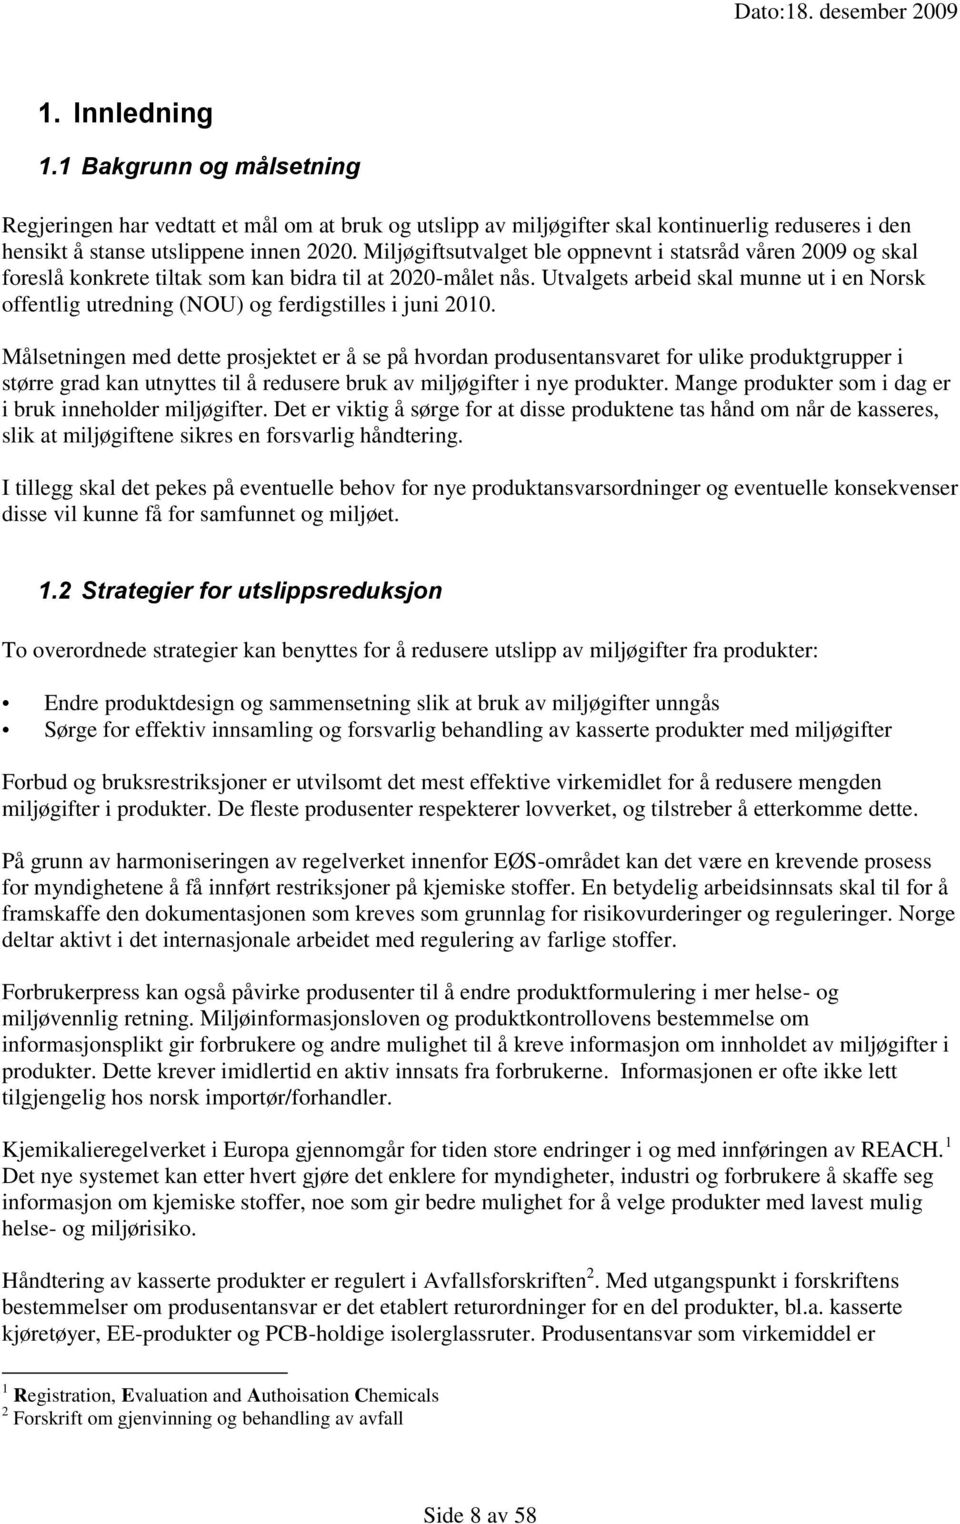 Utvalgets arbeid skal munne ut i en Norsk offentlig utredning (NOU) og ferdigstilles i juni 2010.